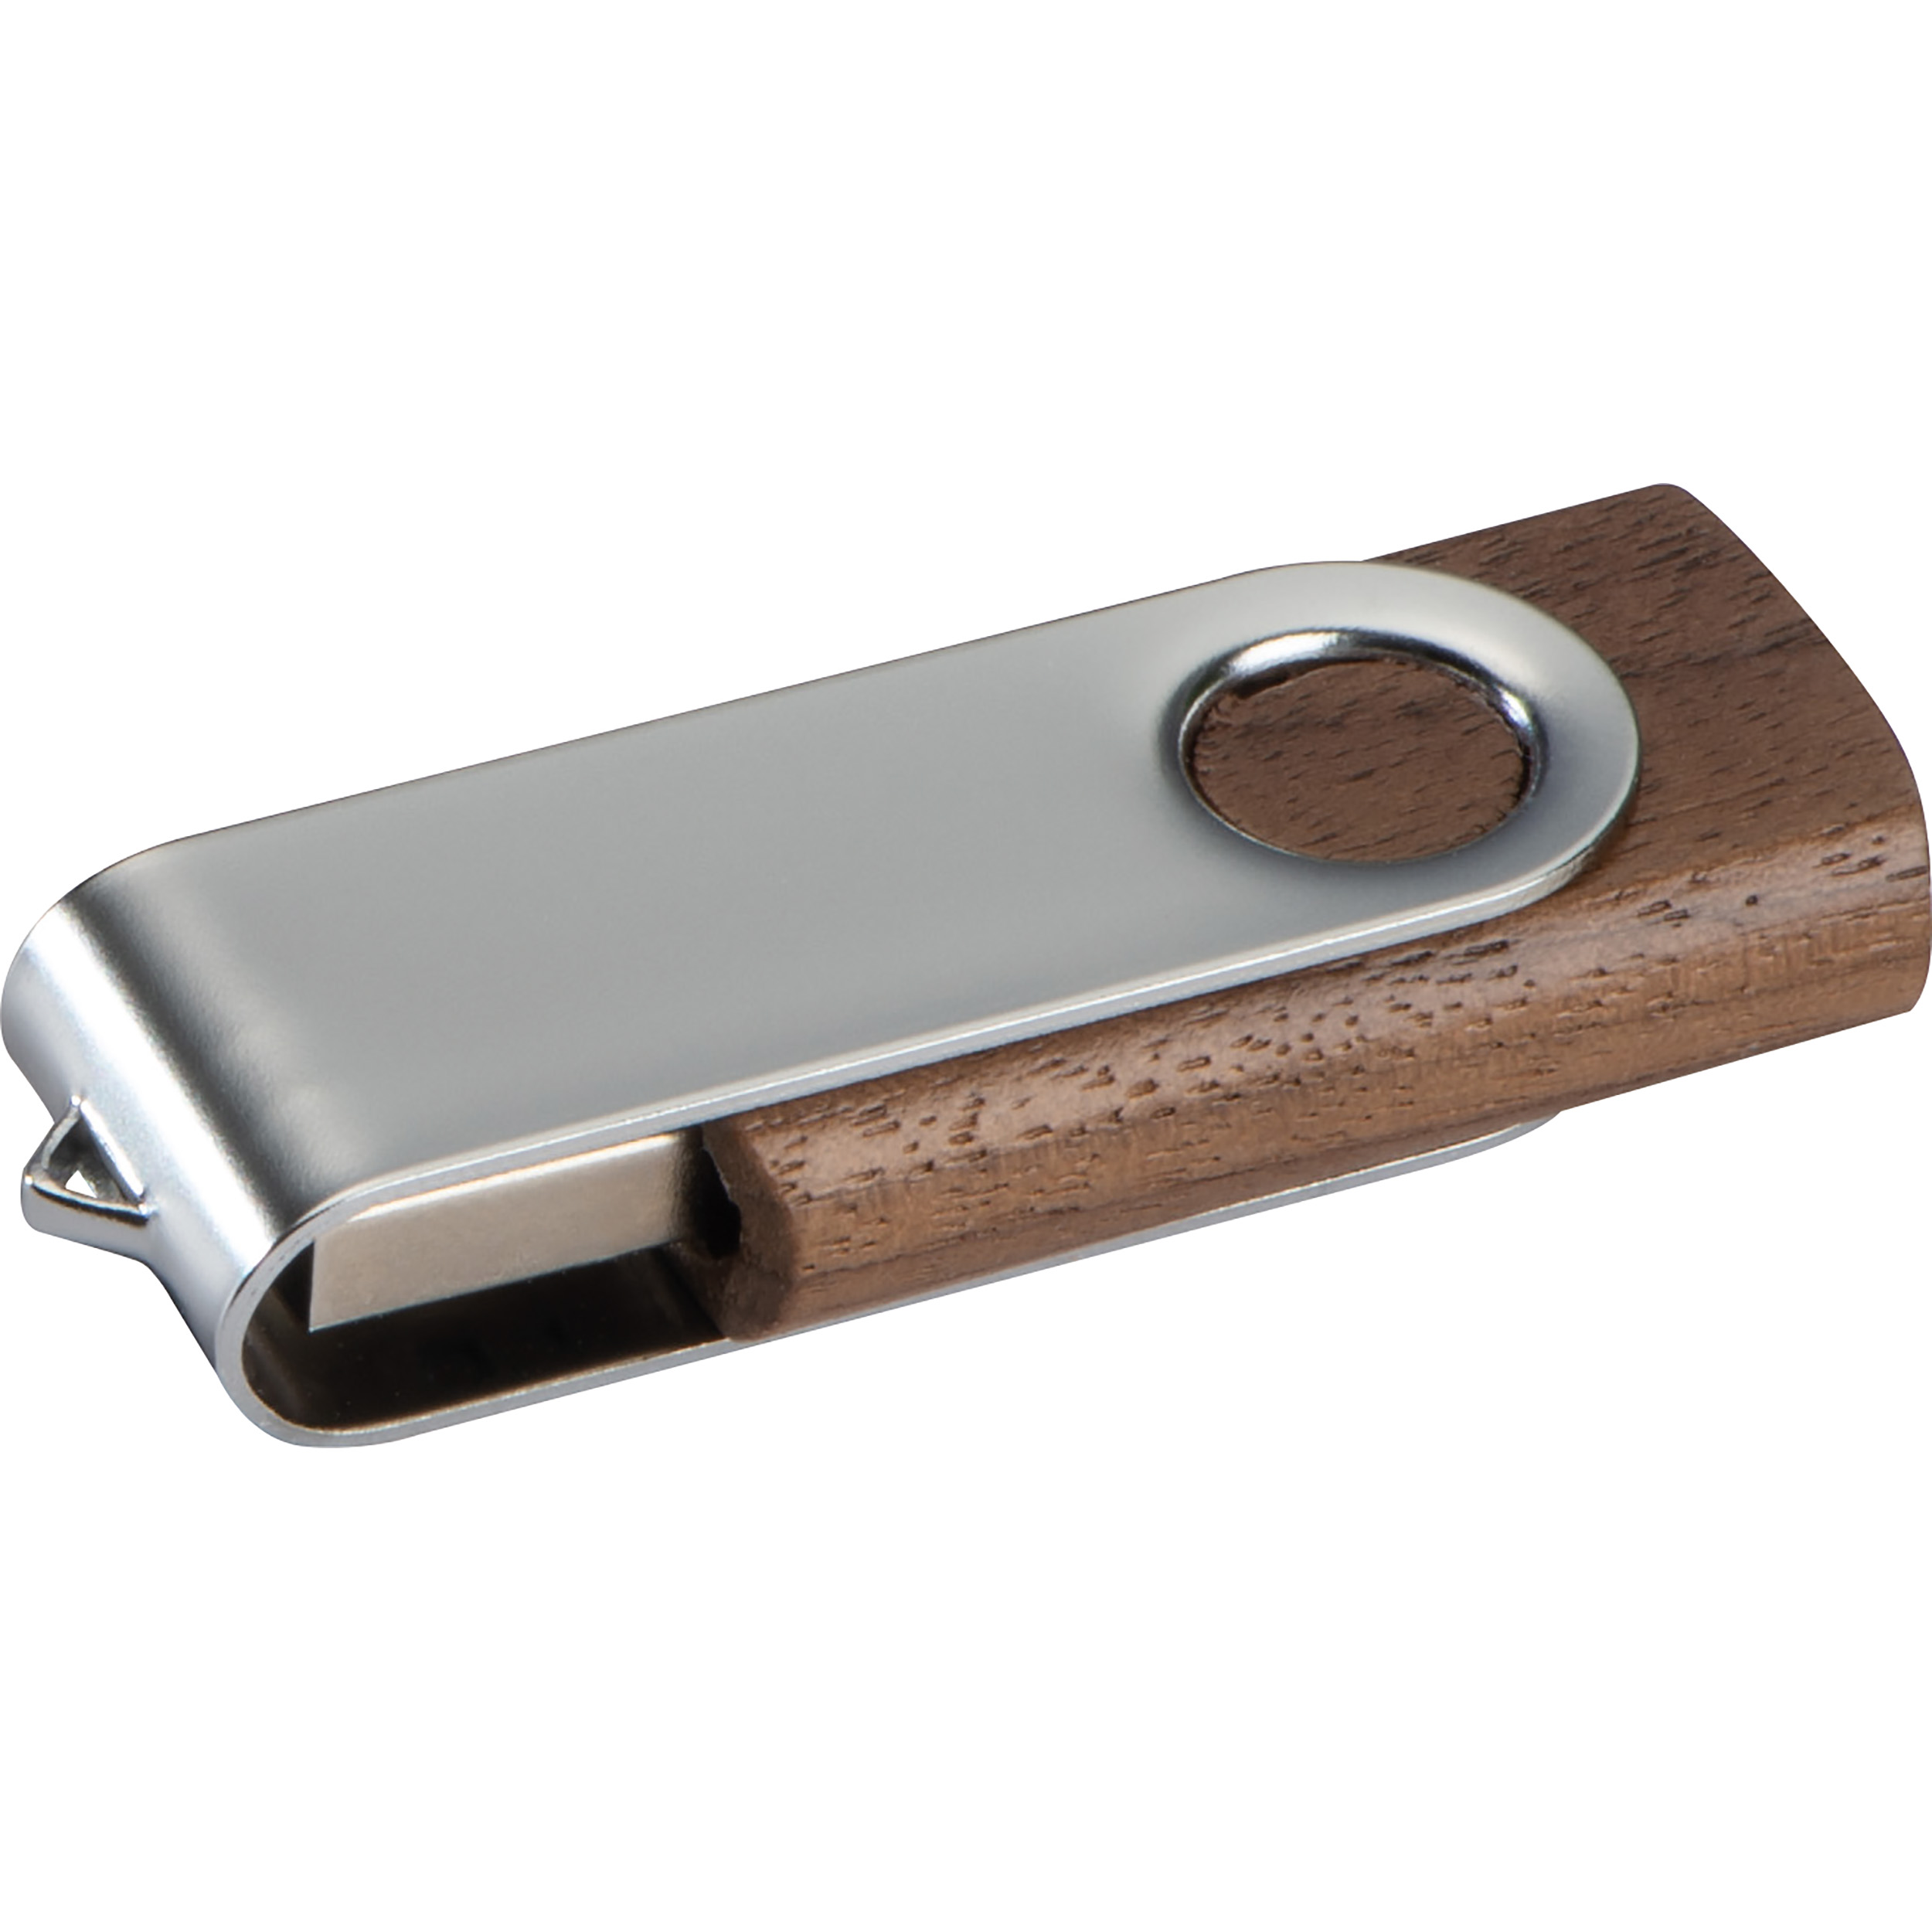 Chiavetta USB con coperchio in legno scuro